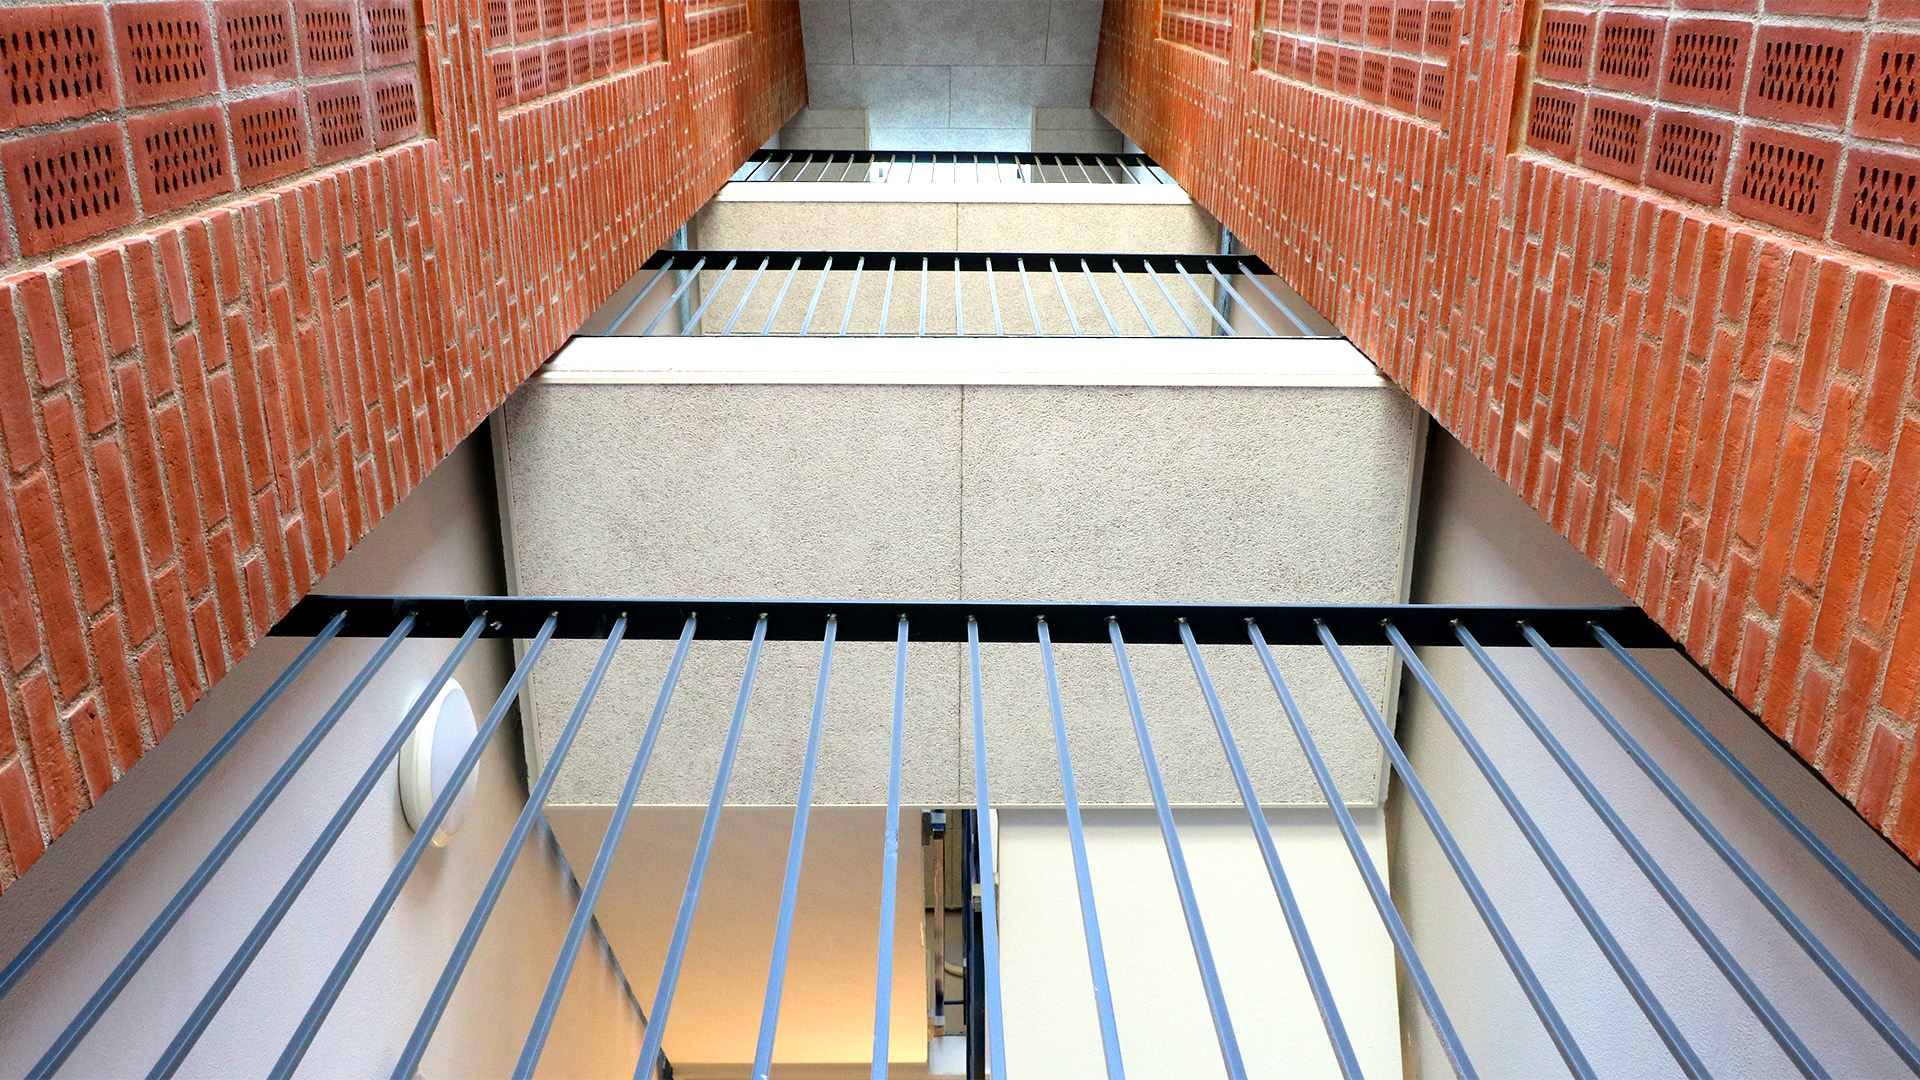 Boligfoto af etage trappeopgang hos Boligselskabet Sydfyn afdeling 7504 Jægermarken i Svendborg